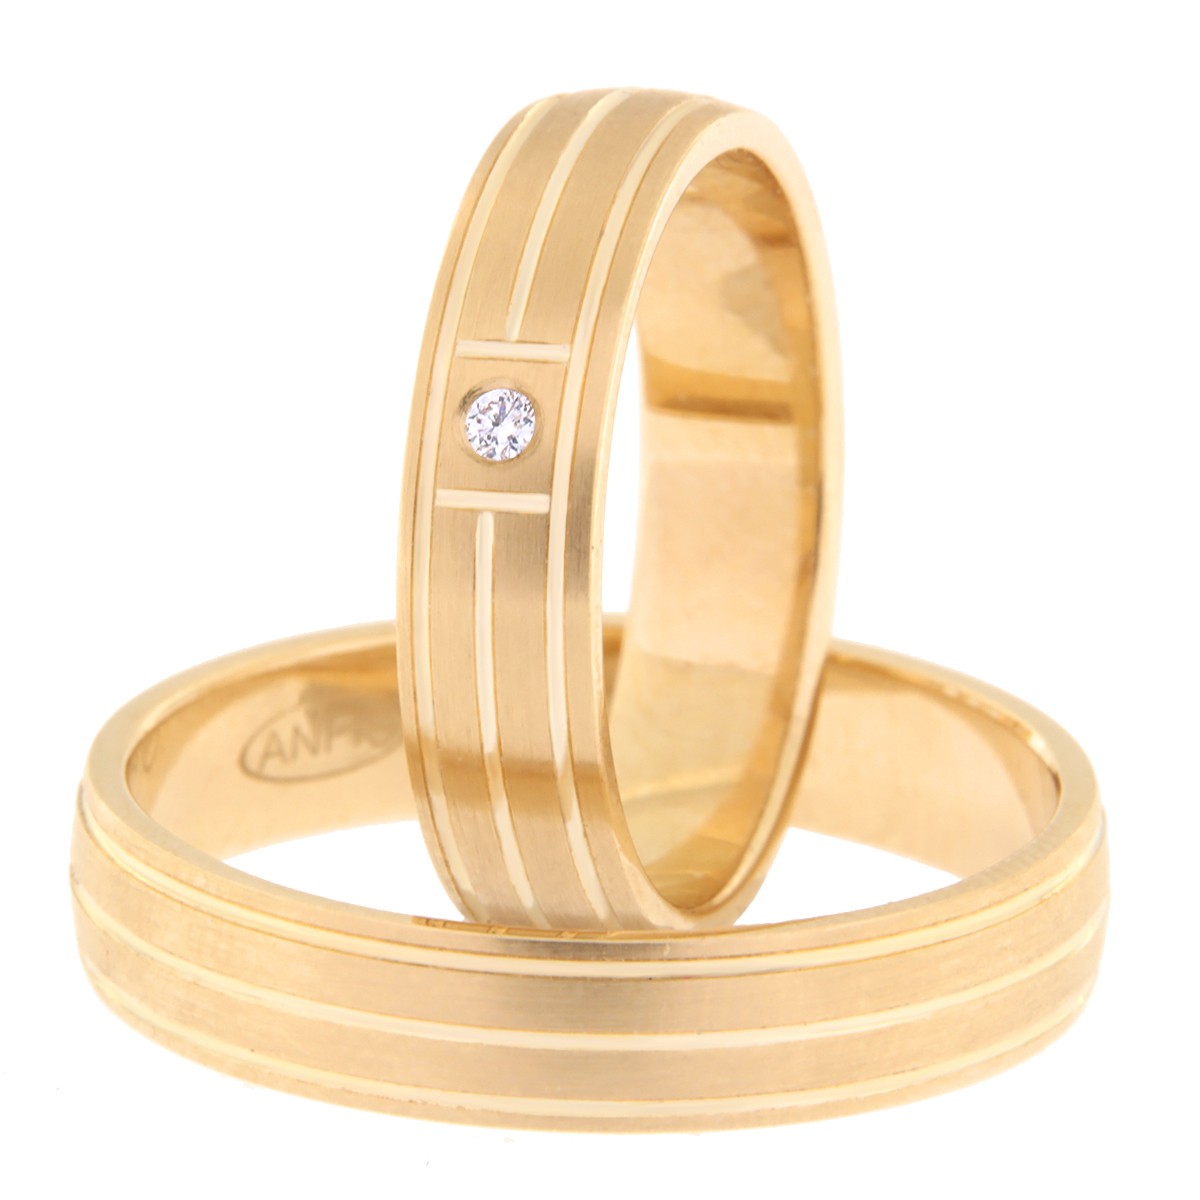 Kullast abielusõrmus teemantiga Kood: Rn0173-5-km1-1k